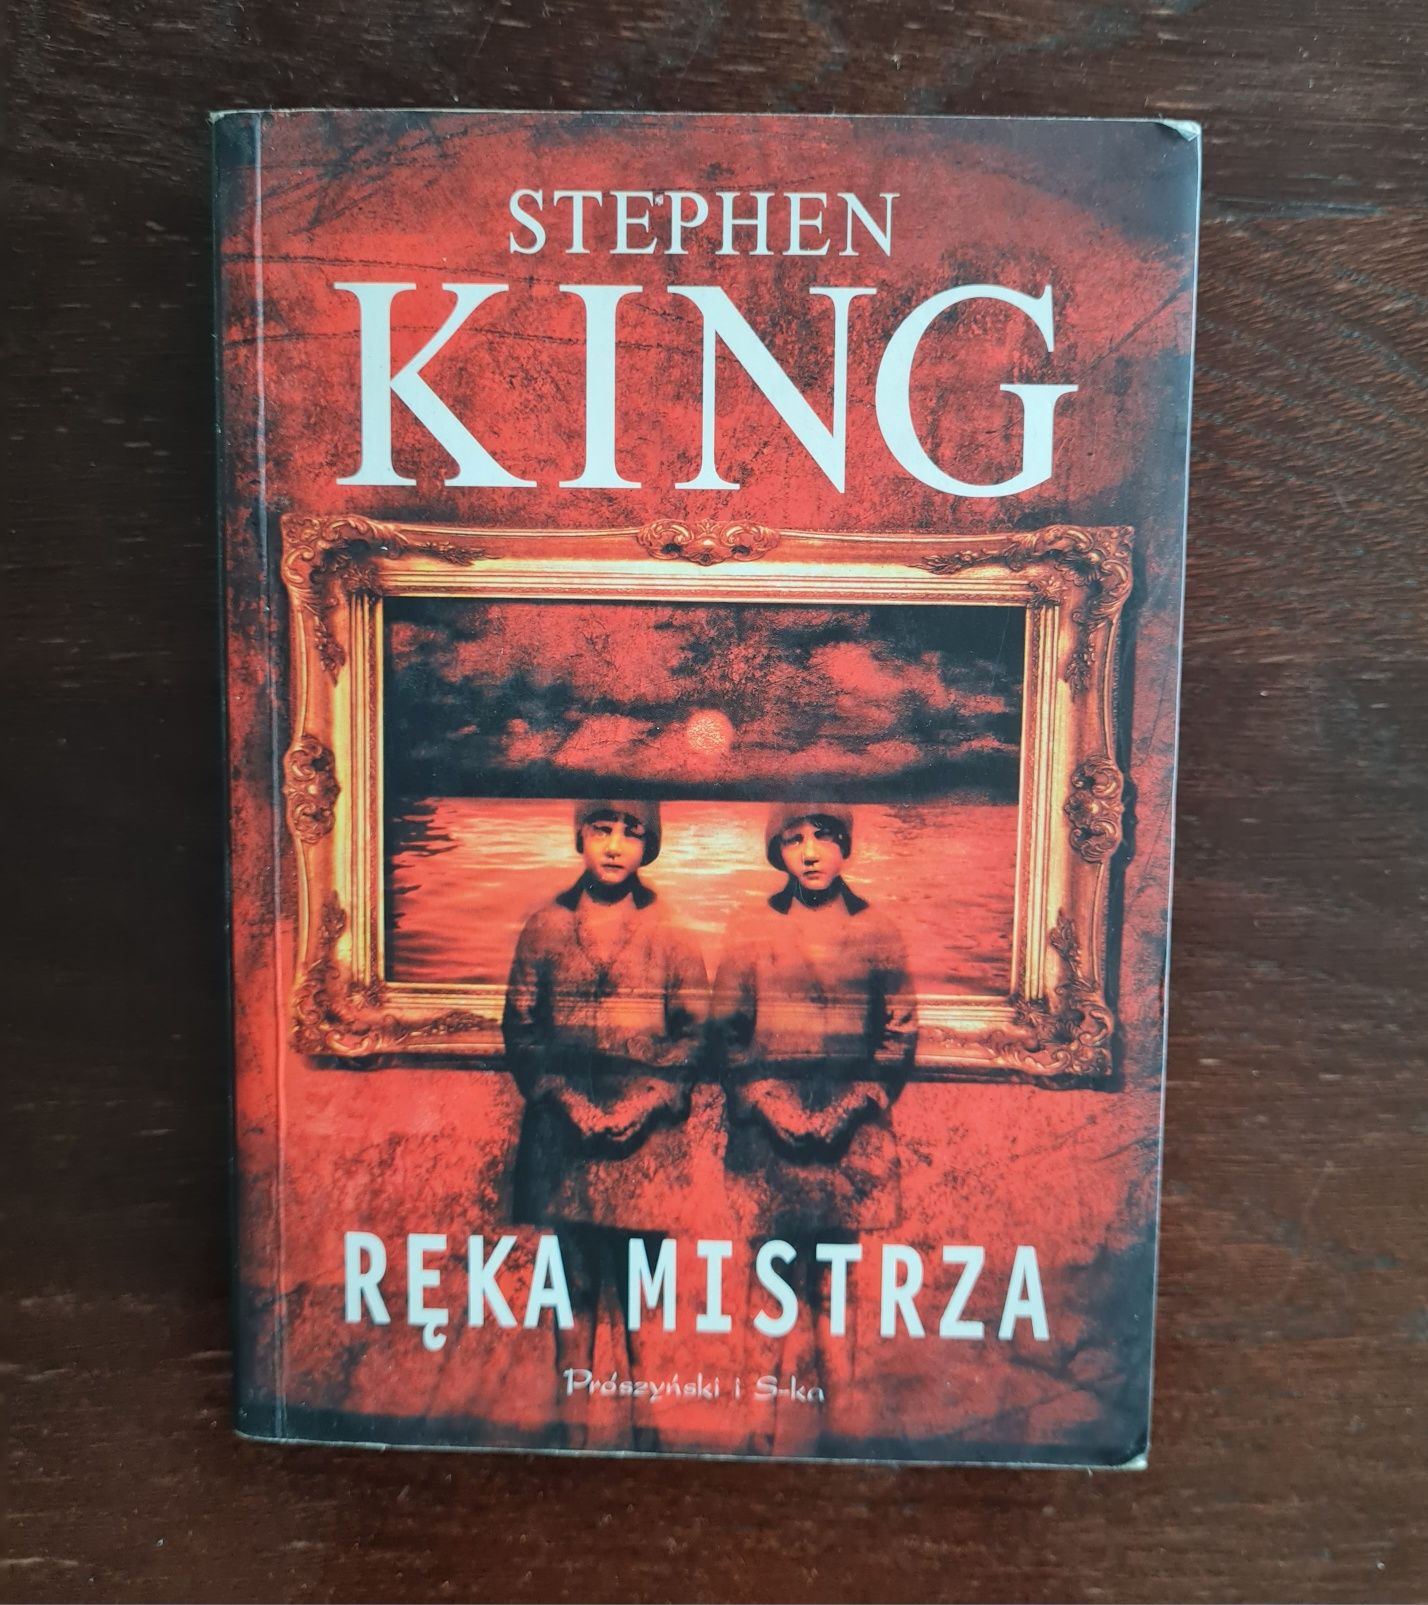 Stephen King "Ręka Mistrza"